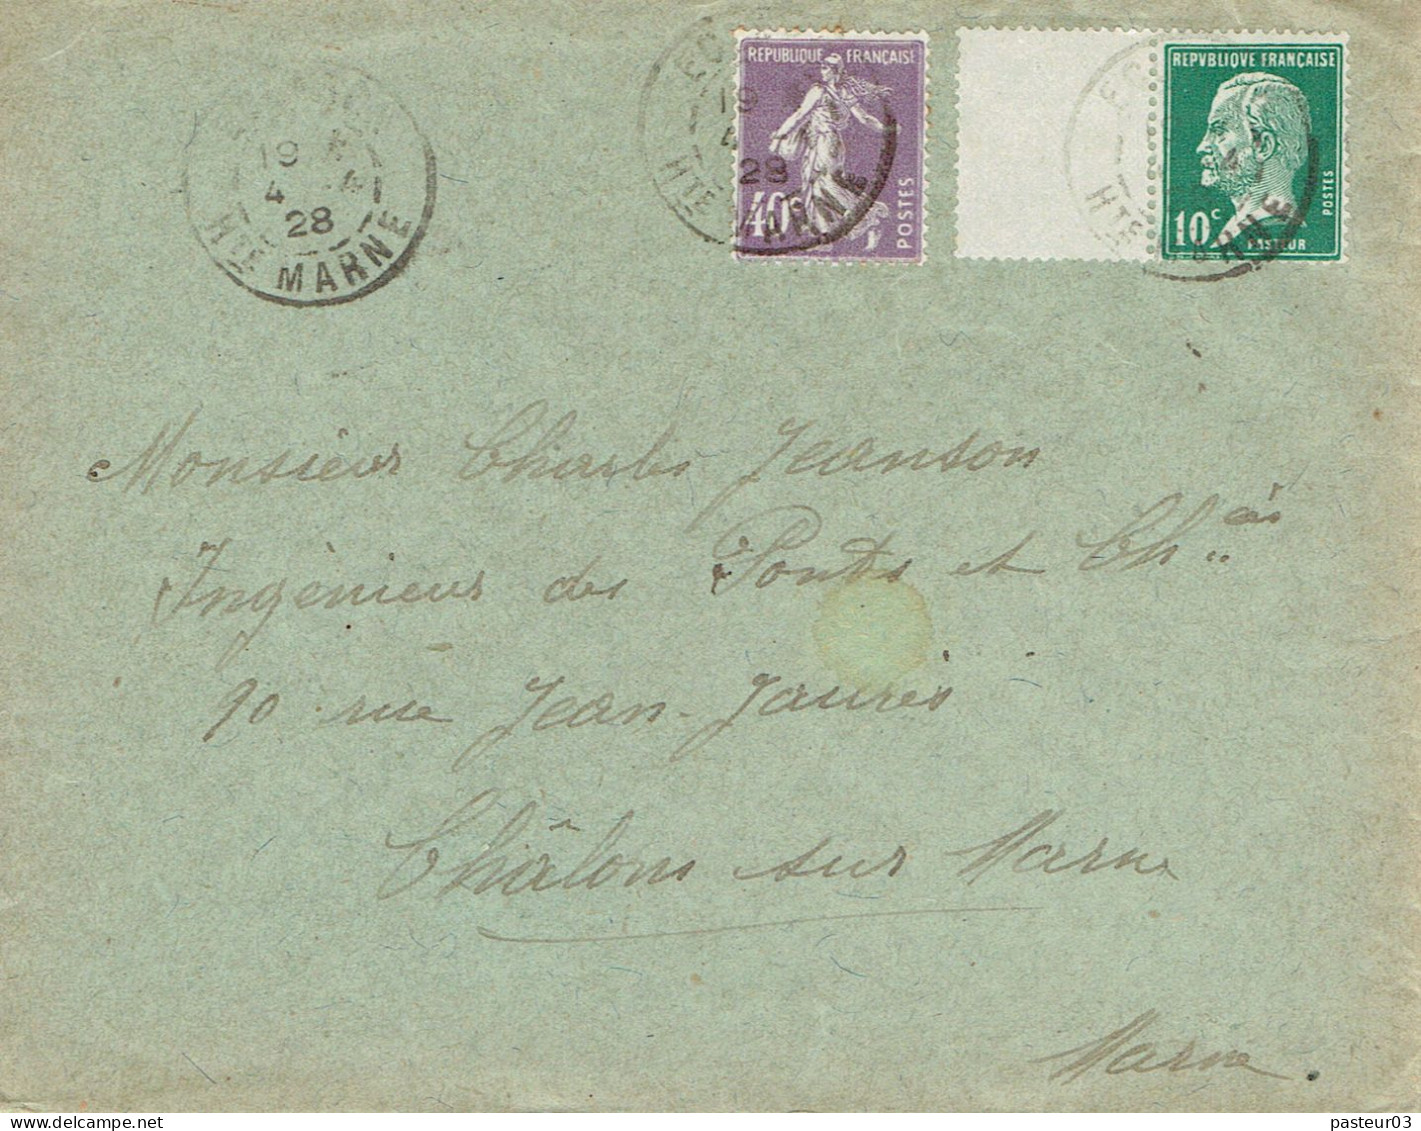 Tarifs Postaux France Du 09-08-1926 (13) Pasteur N° 170 10 C. + Semeuse 40 C.violet LSI 04-04-1928 - 1922-26 Pasteur